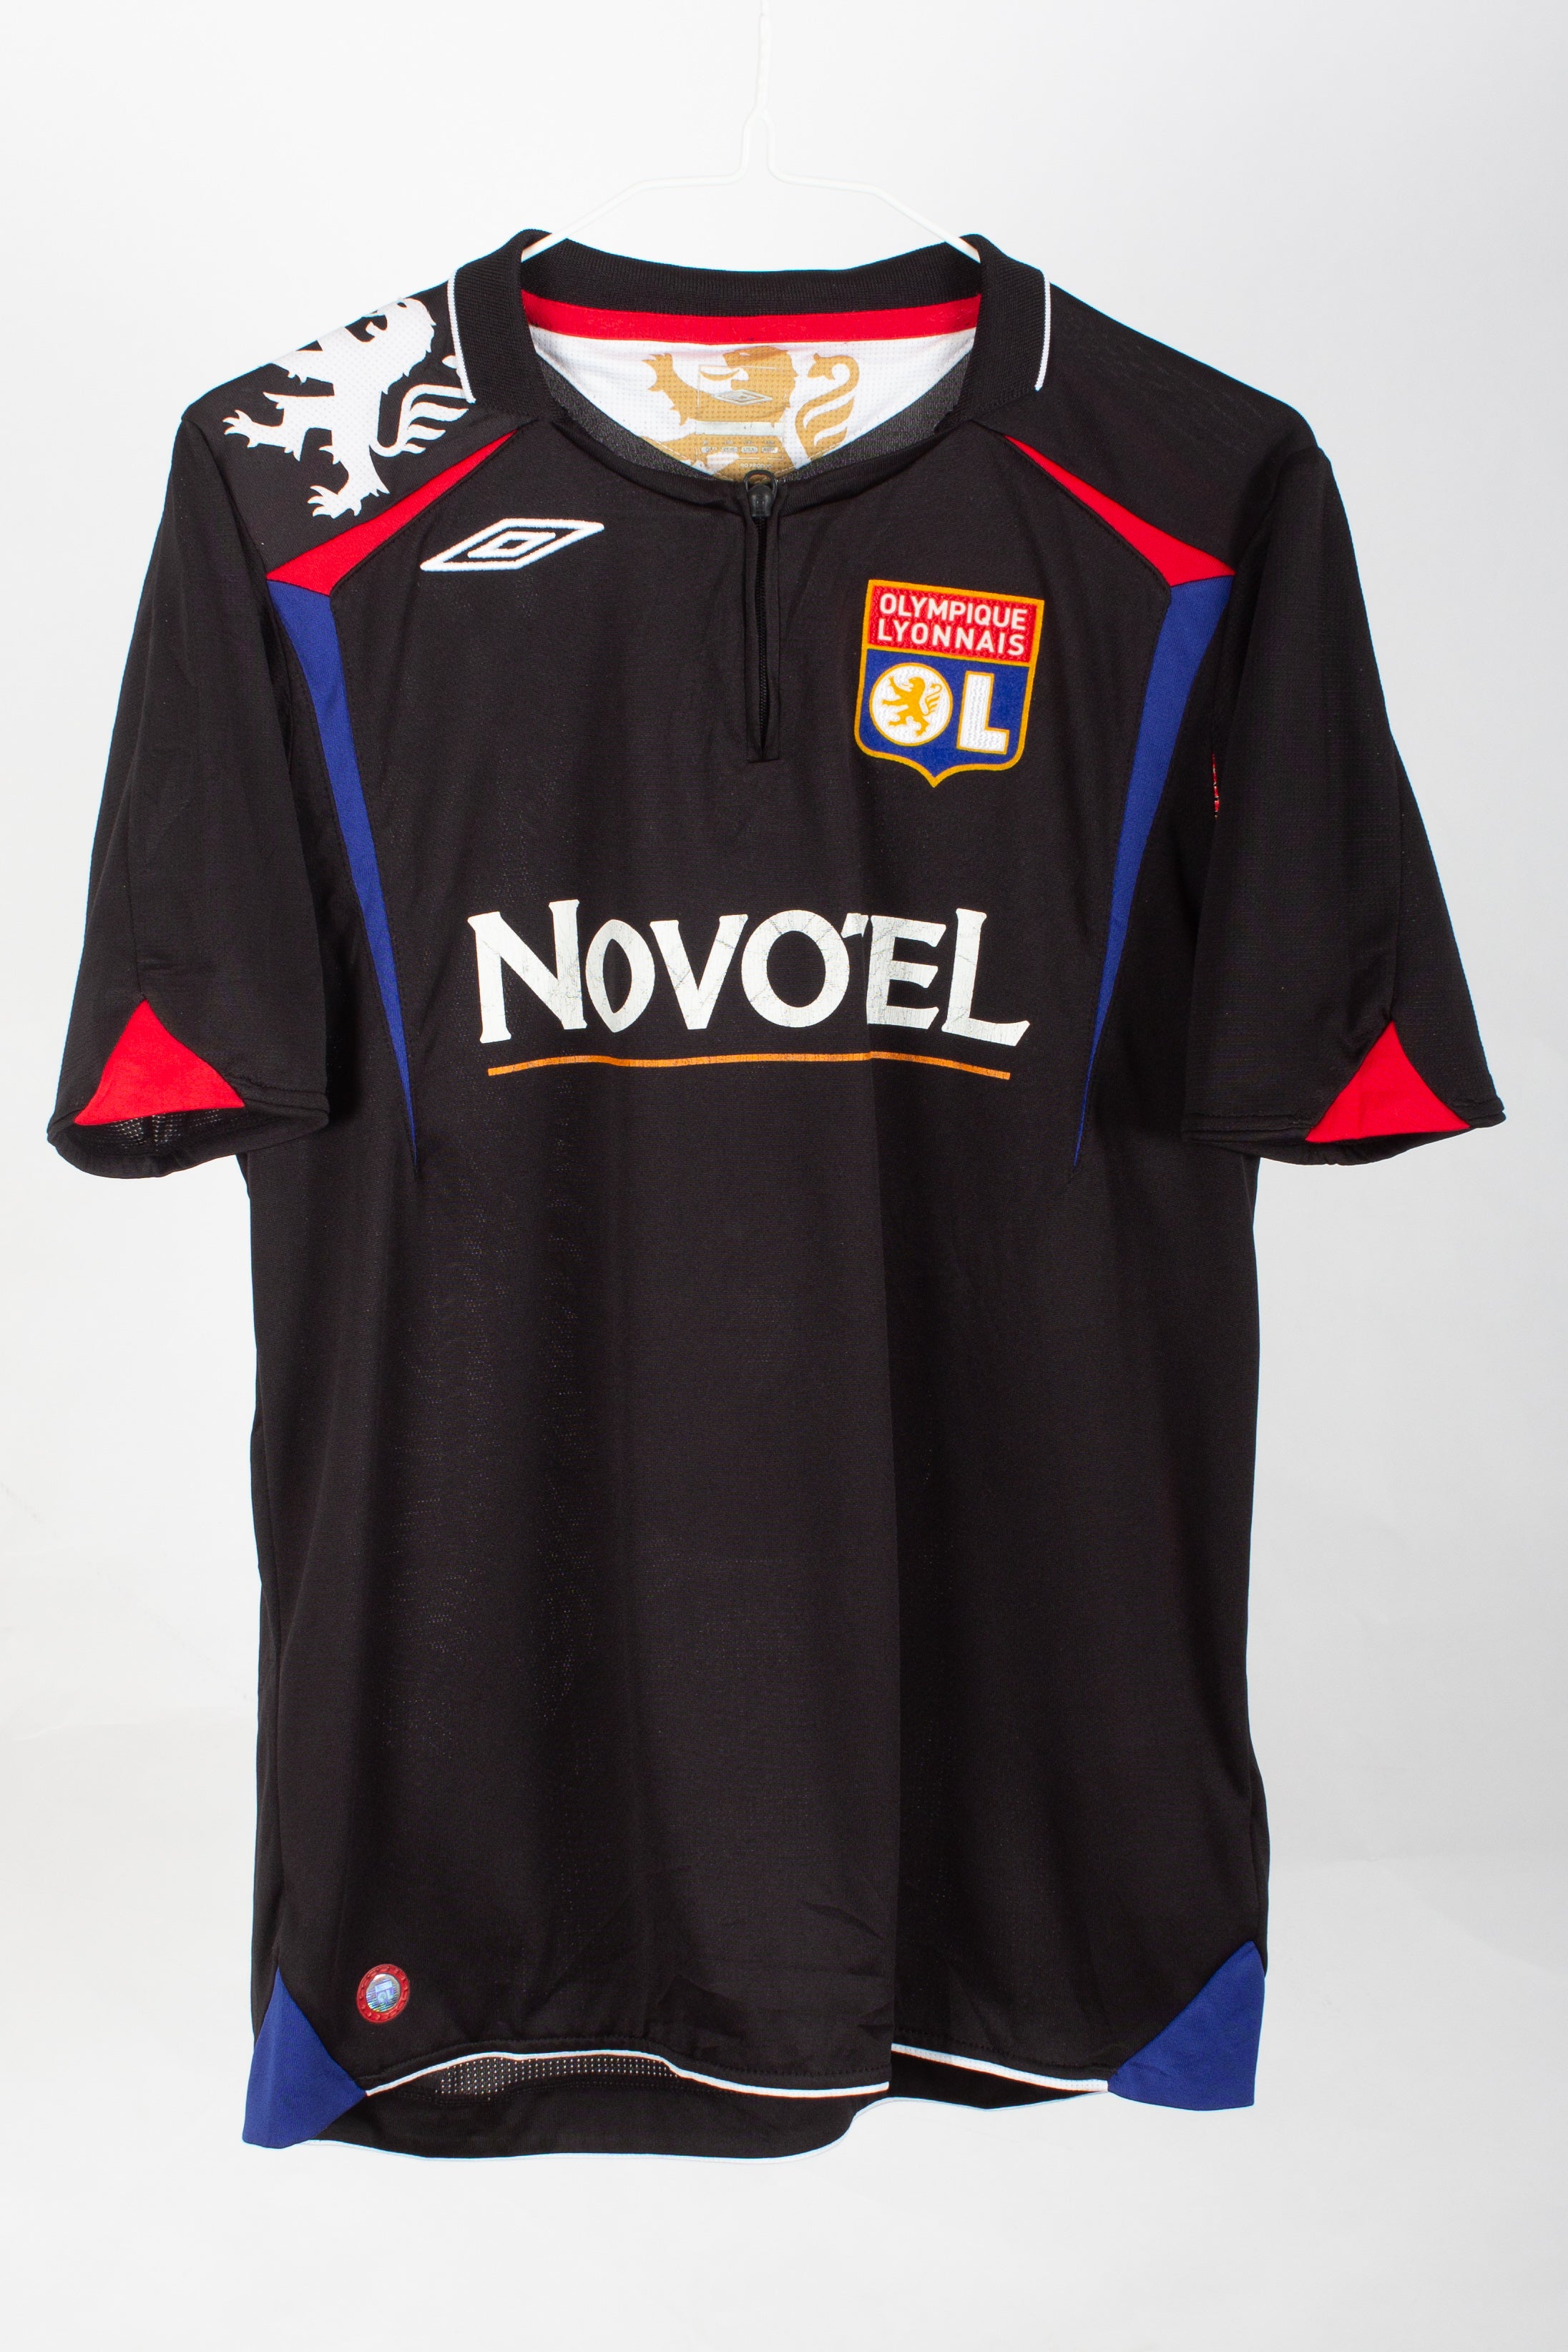 Kids Olympique Lyonnais 2006/07 Third Shirt (Juninho #8)